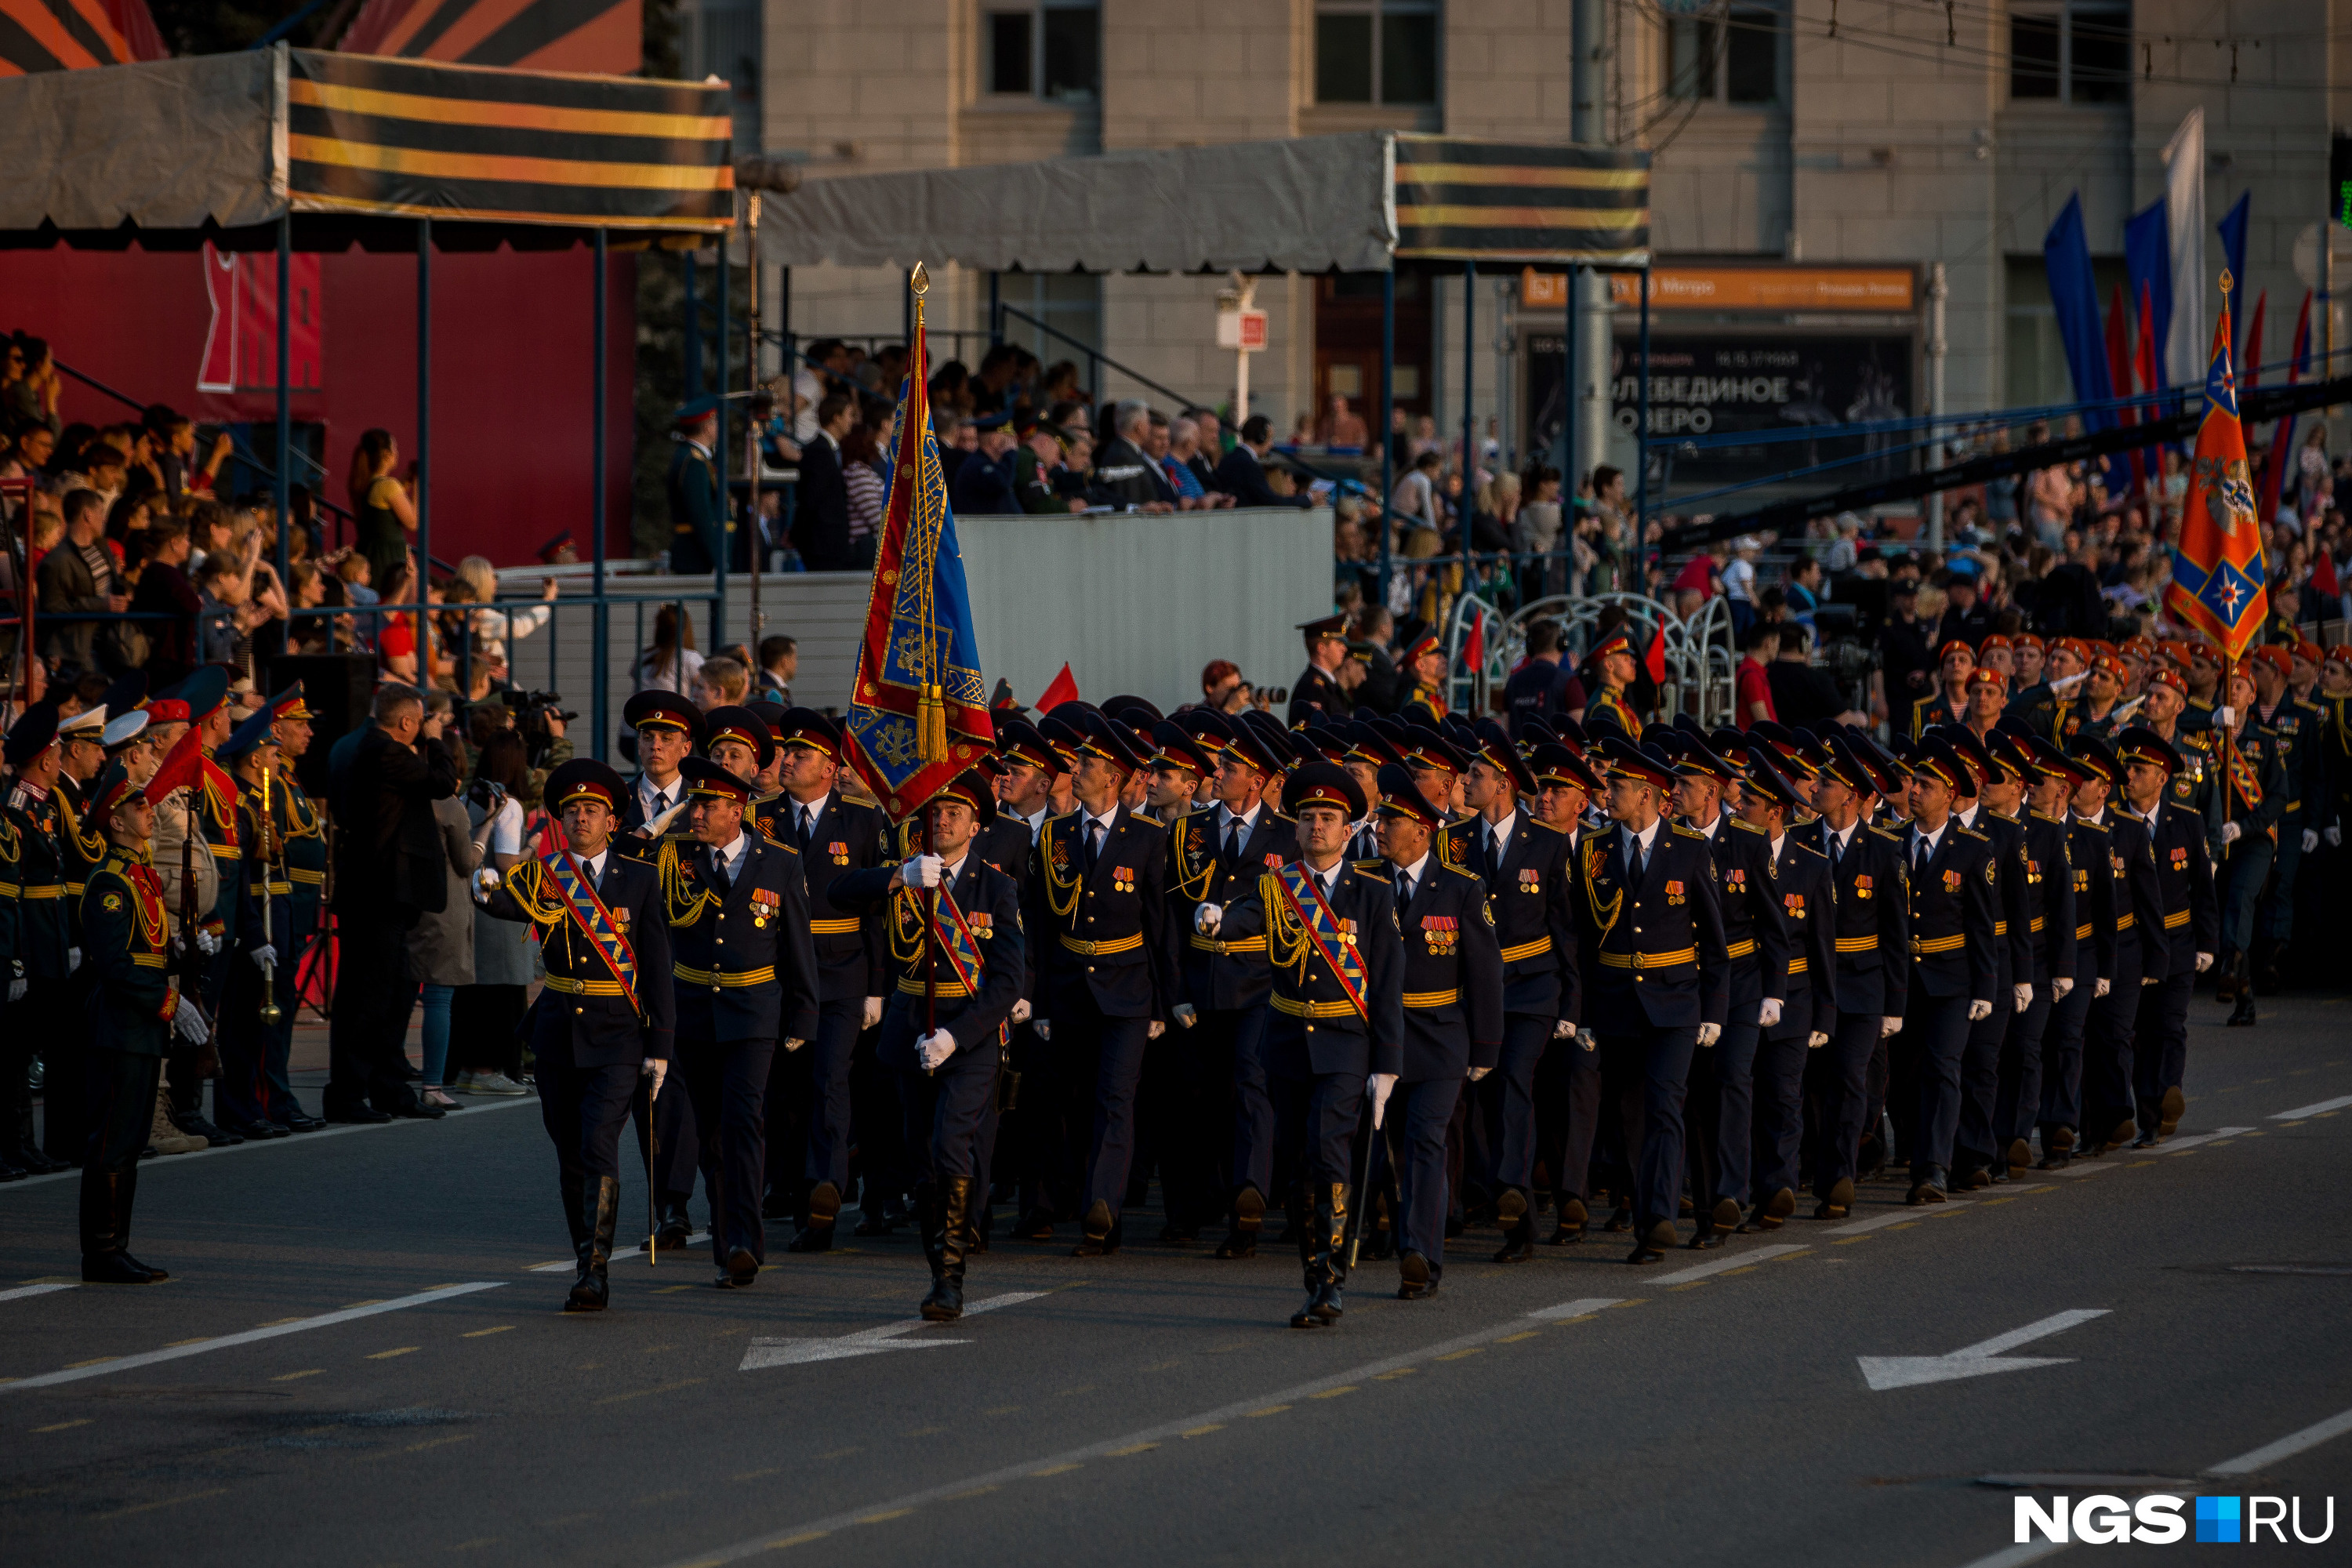 Колонны военных в форме прошли мимо трибуны у памятника Ленину